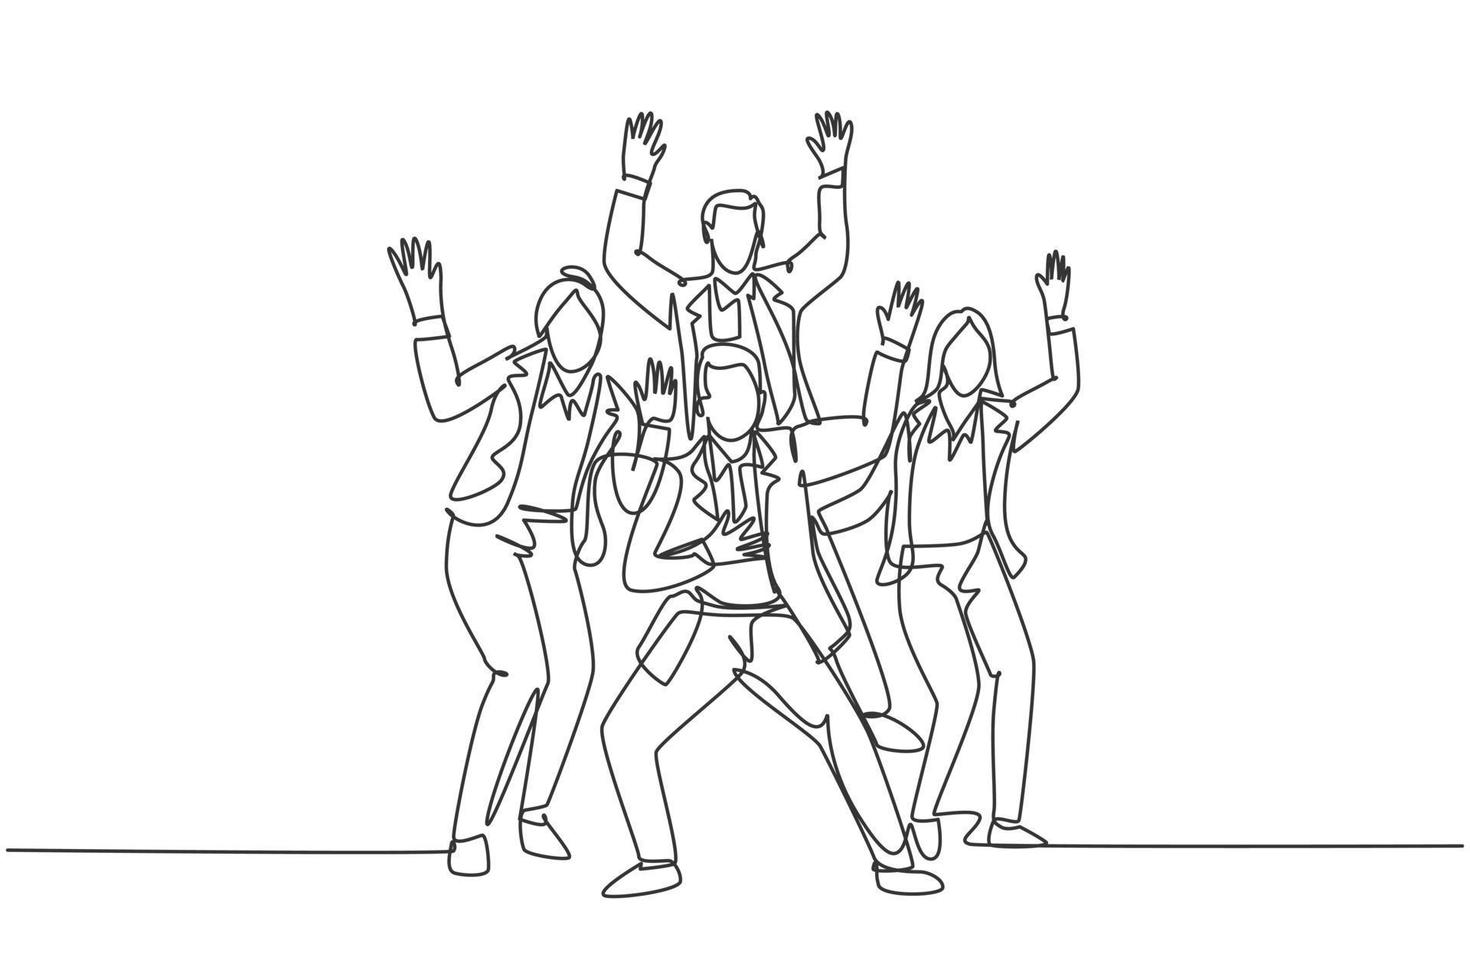 enda kontinuerlig linjeteckning av unga glada manliga och kvinnliga tränare som dansar av glädje vid seminarierummet tillsammans. företag lagarbete firande koncept en linje rita design vektor illustration